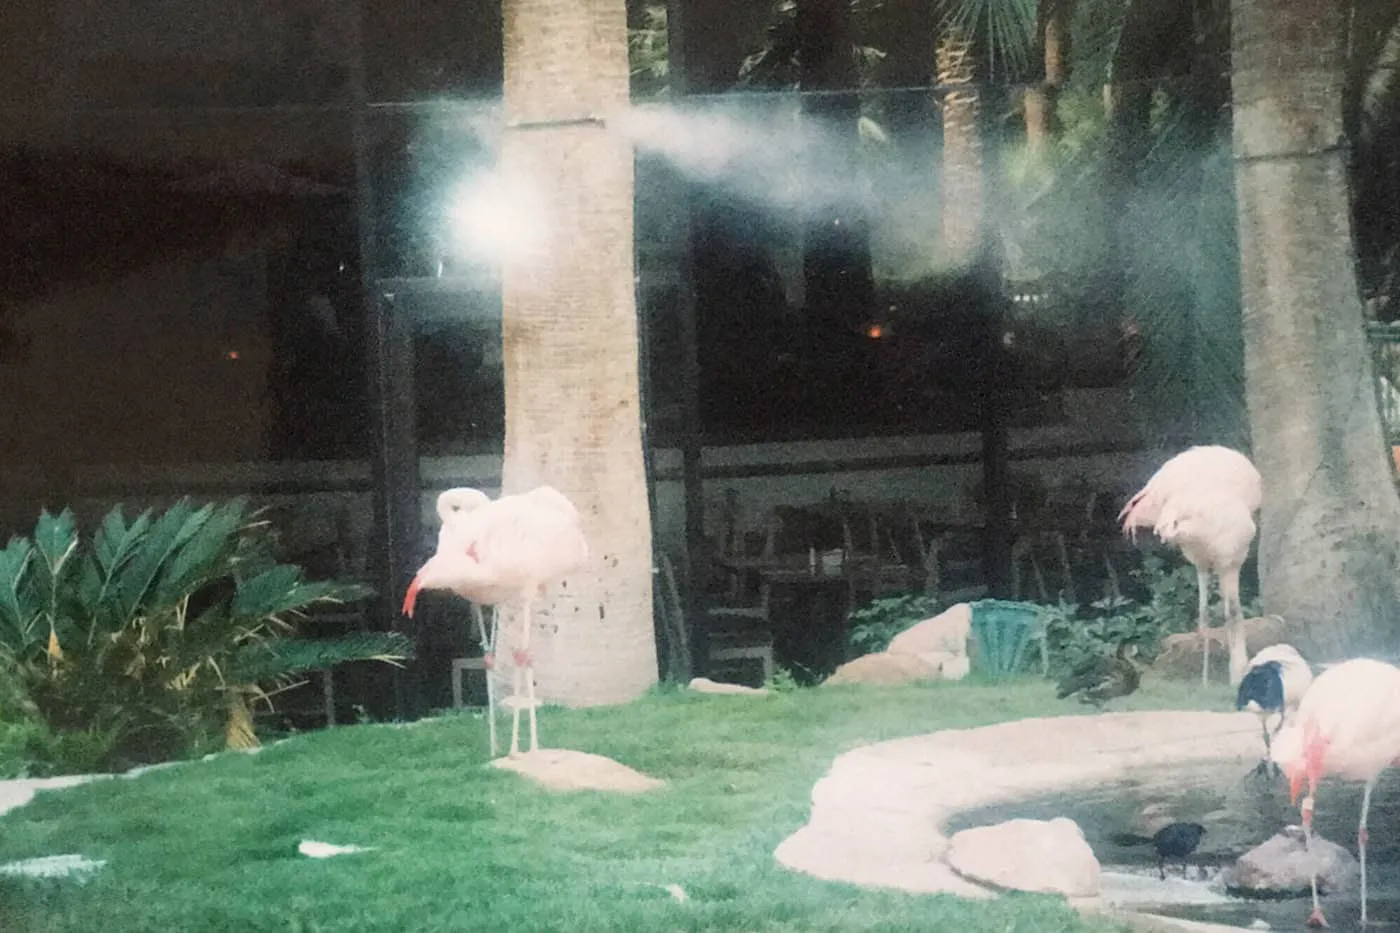 Flamingos at the Wildlife Habitat at the Flamingo Hotel and Casino in Las Vegas.